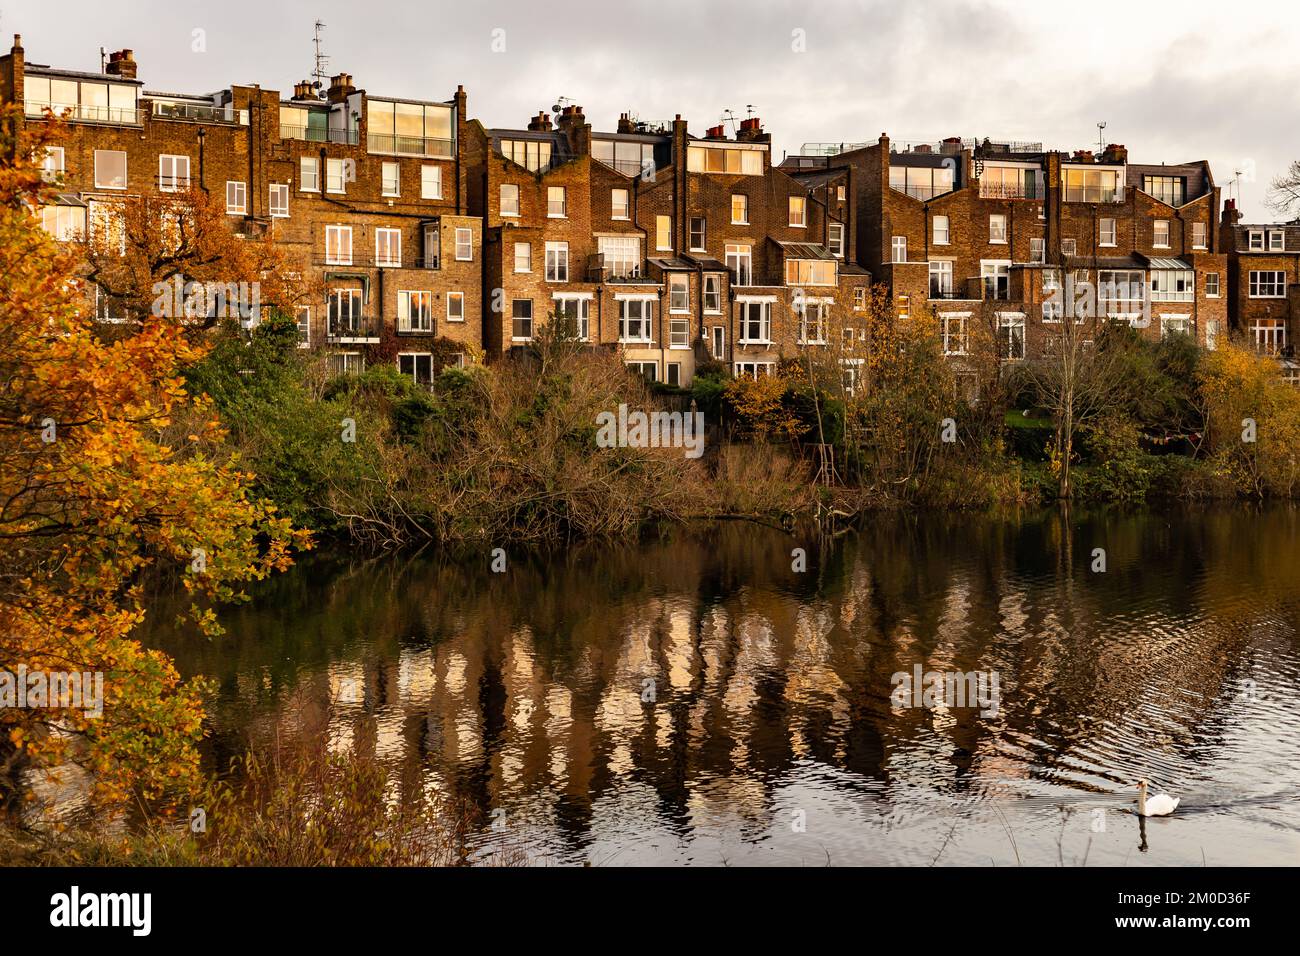 Partie de la grande Hamstead Heath, près de l'extrémité sud vert.une scène d'automne montrant des maisons frappantes surplombant l'étang dans des couleurs chaudes mais wintry Banque D'Images